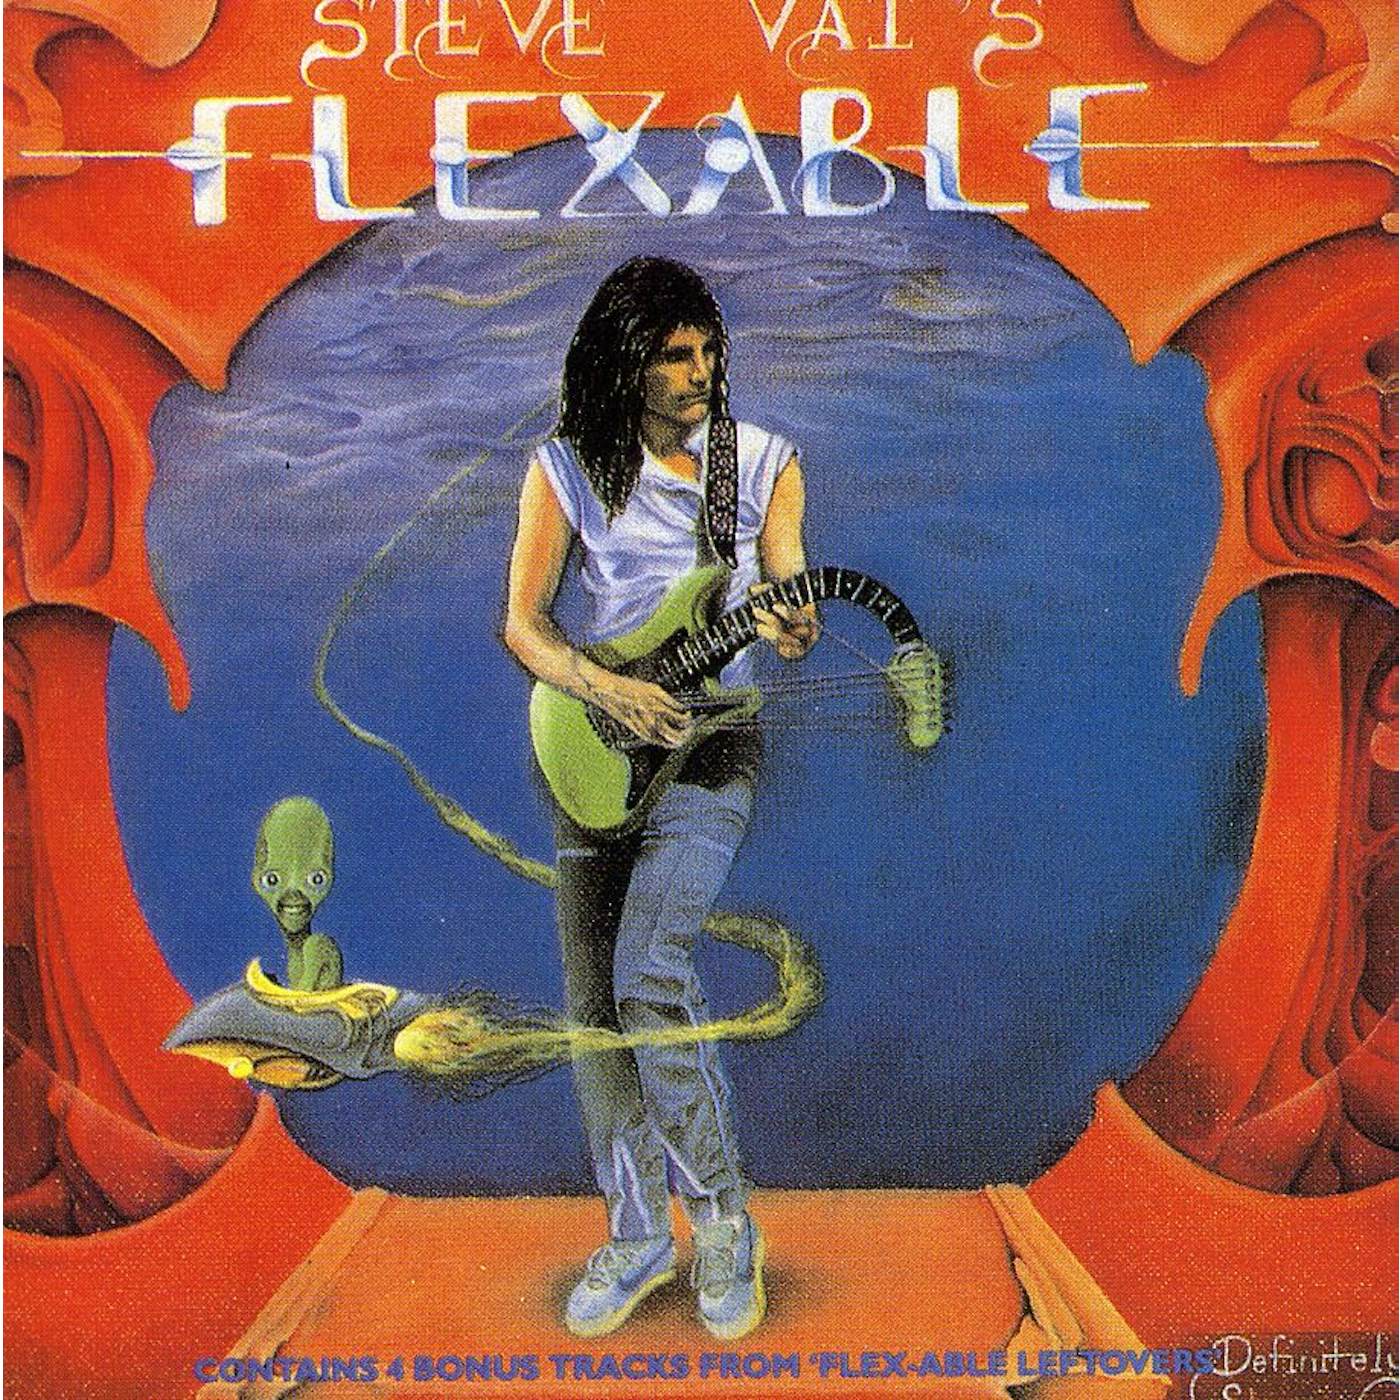 Steve Vai FLEX-ABLE CD